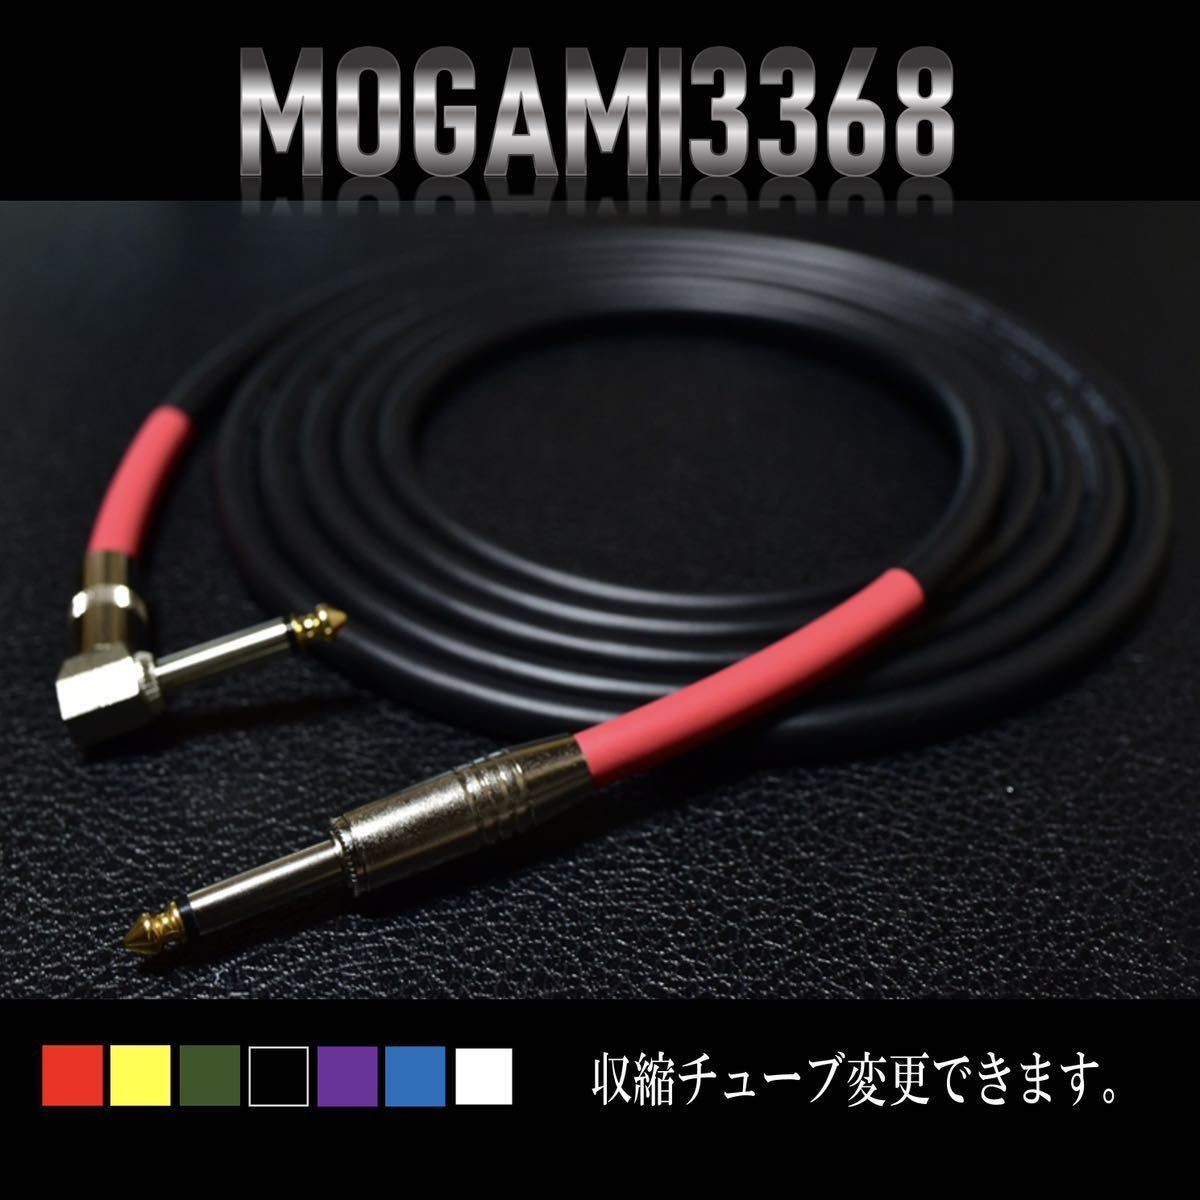 『MOGAMI モガミケーブル#3368』ギターベースシールドL-S約2m_画像3